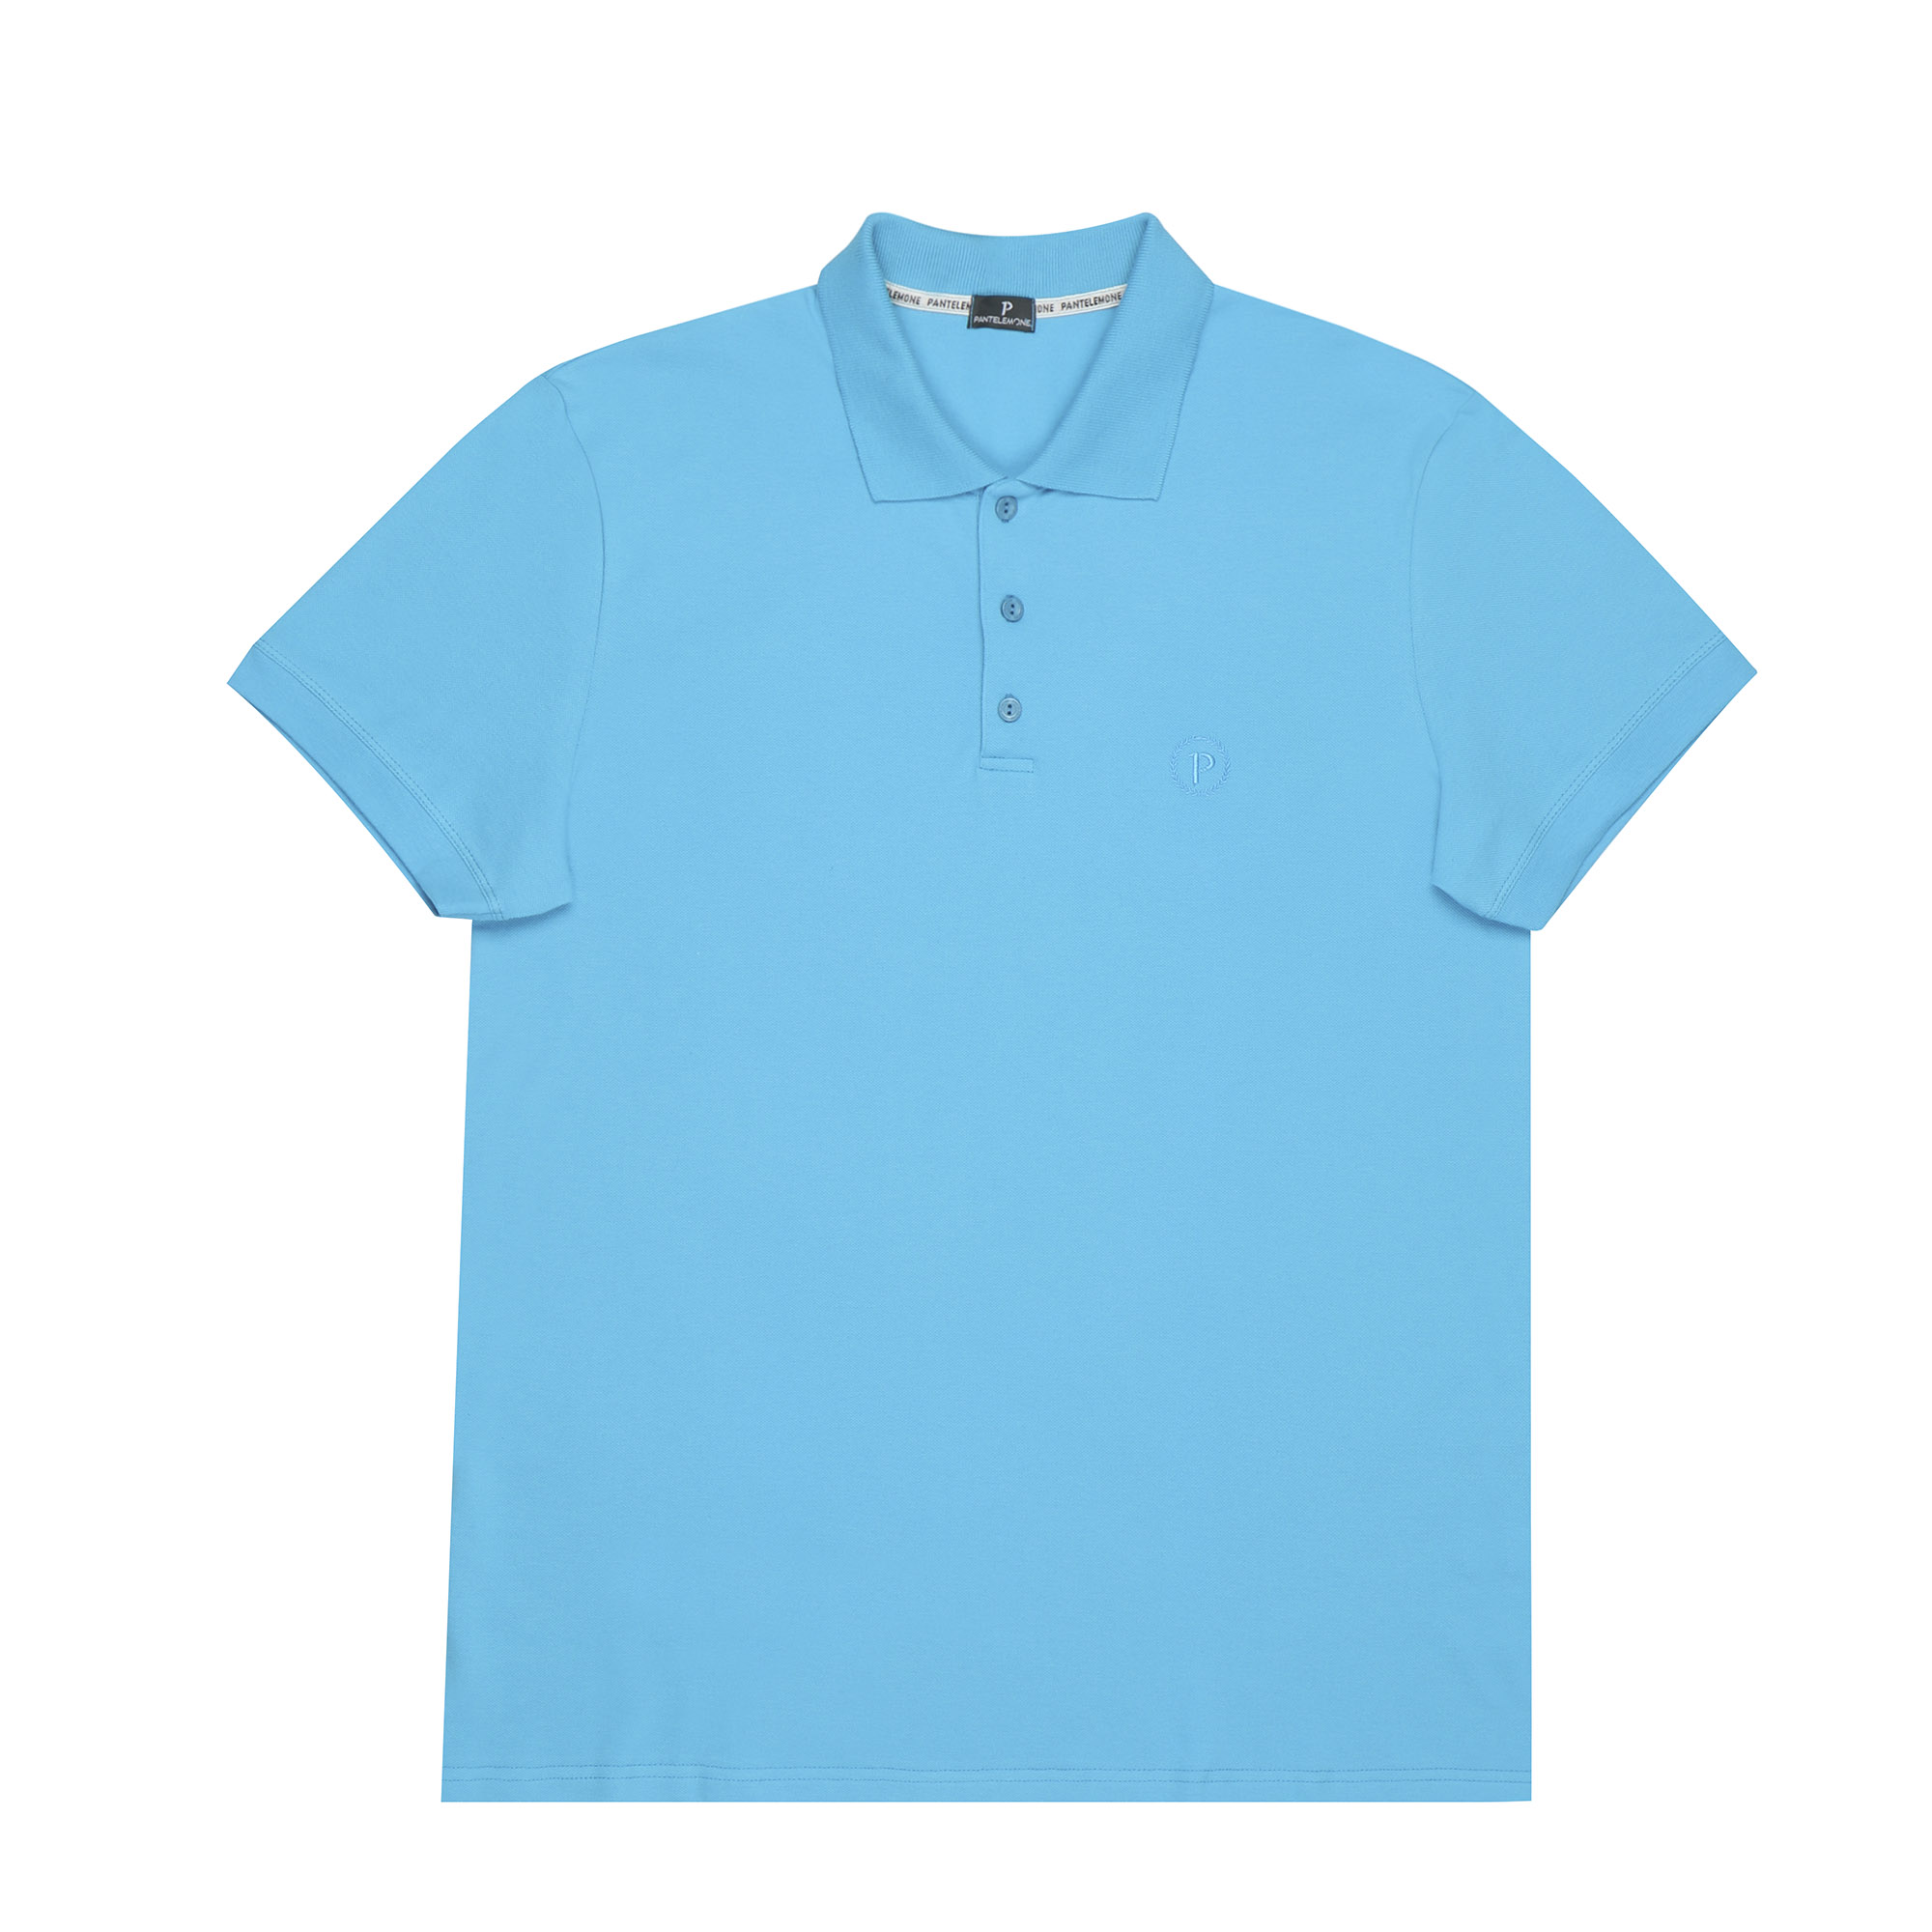 Мужская футболка поло RP-017 Pantelemone 52 бирюзовая, цвет бирюзовый, размер 52 - фото 1